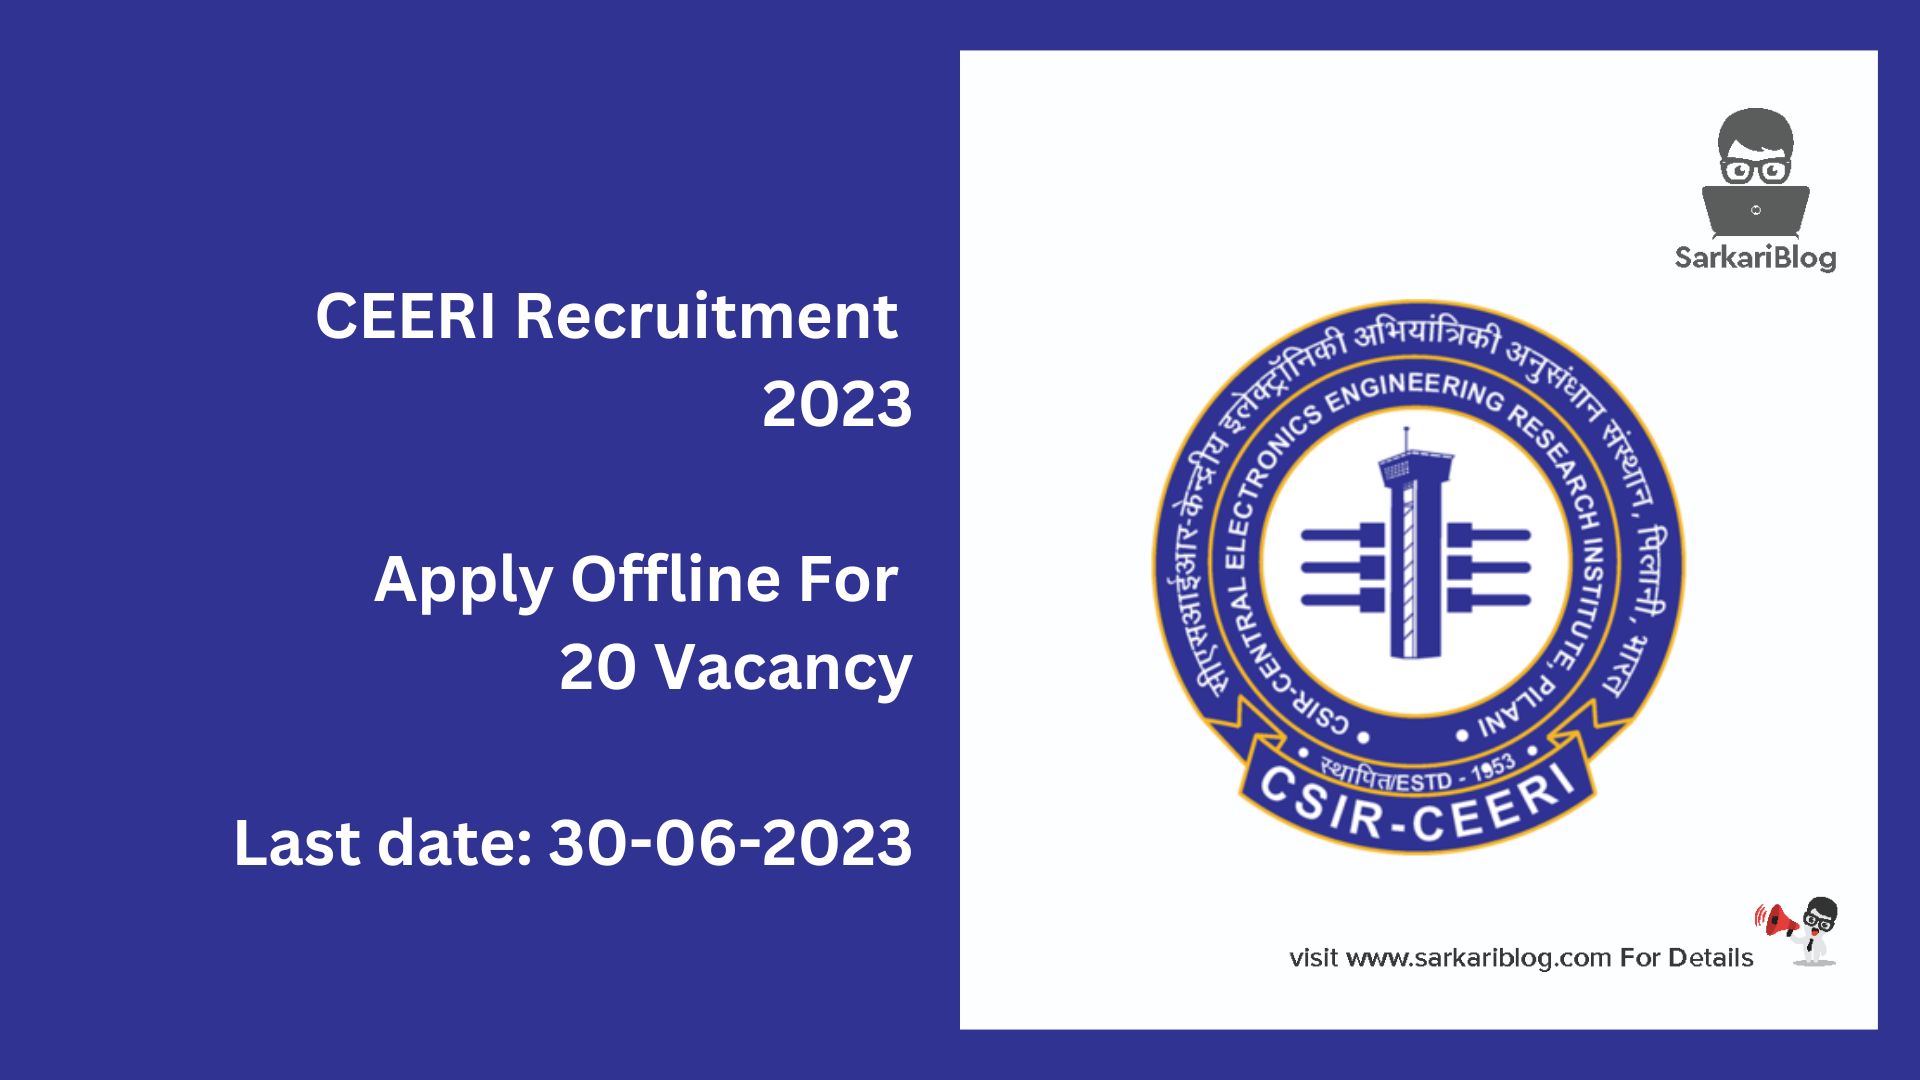 CEERI Recruitment 2023